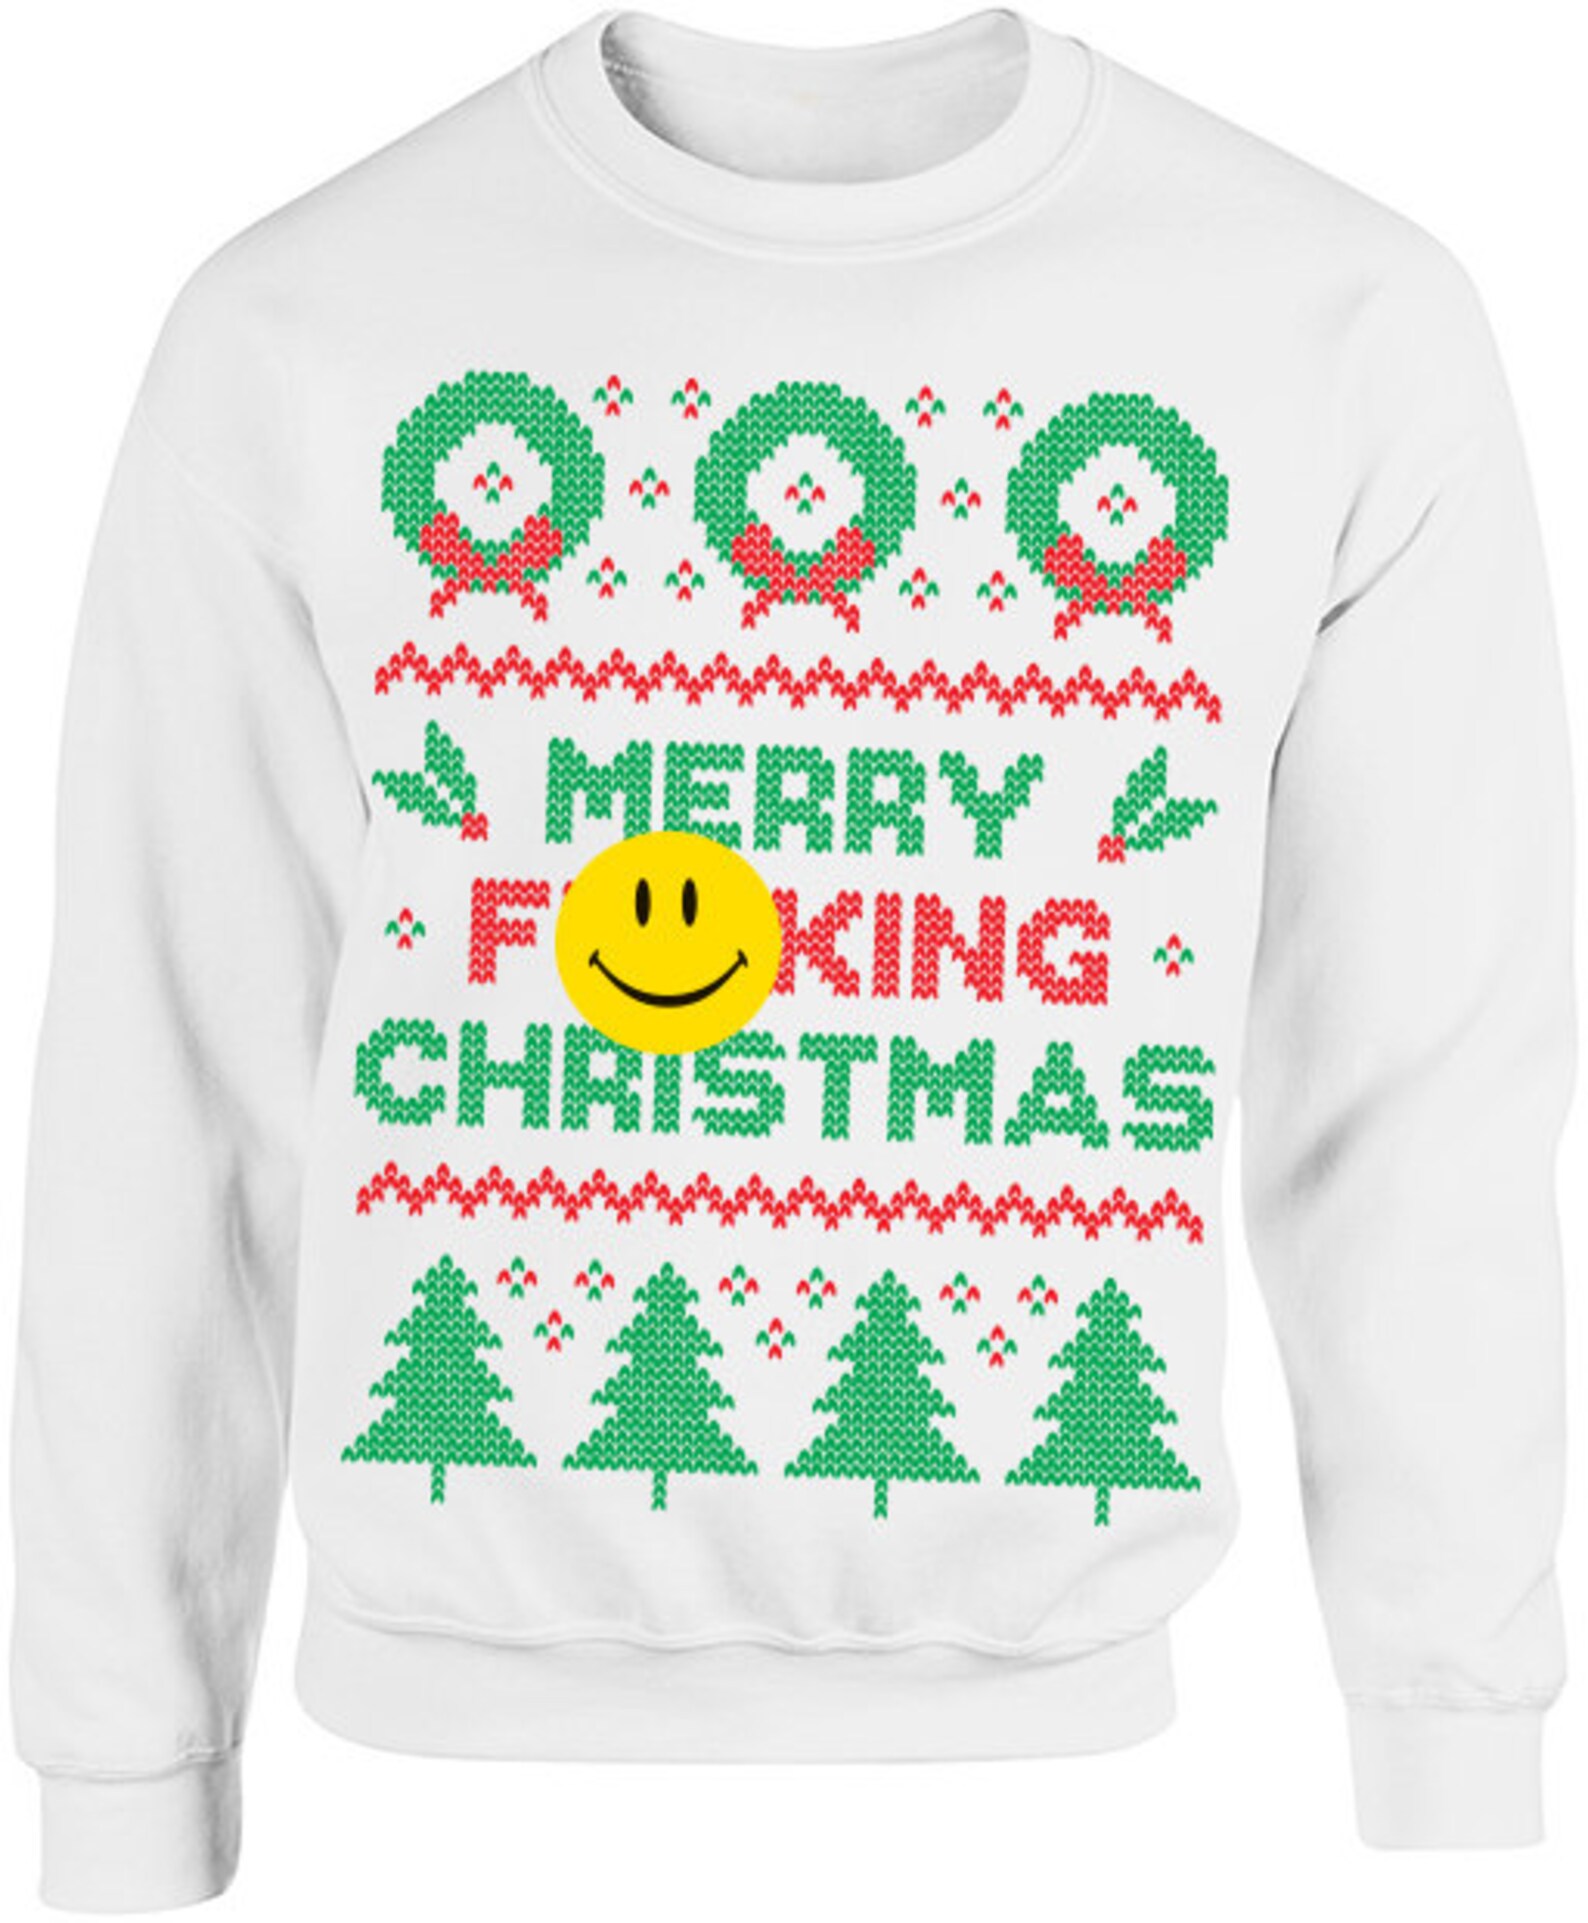 Merry Christmas Ugly Christmas Sweater image 0.